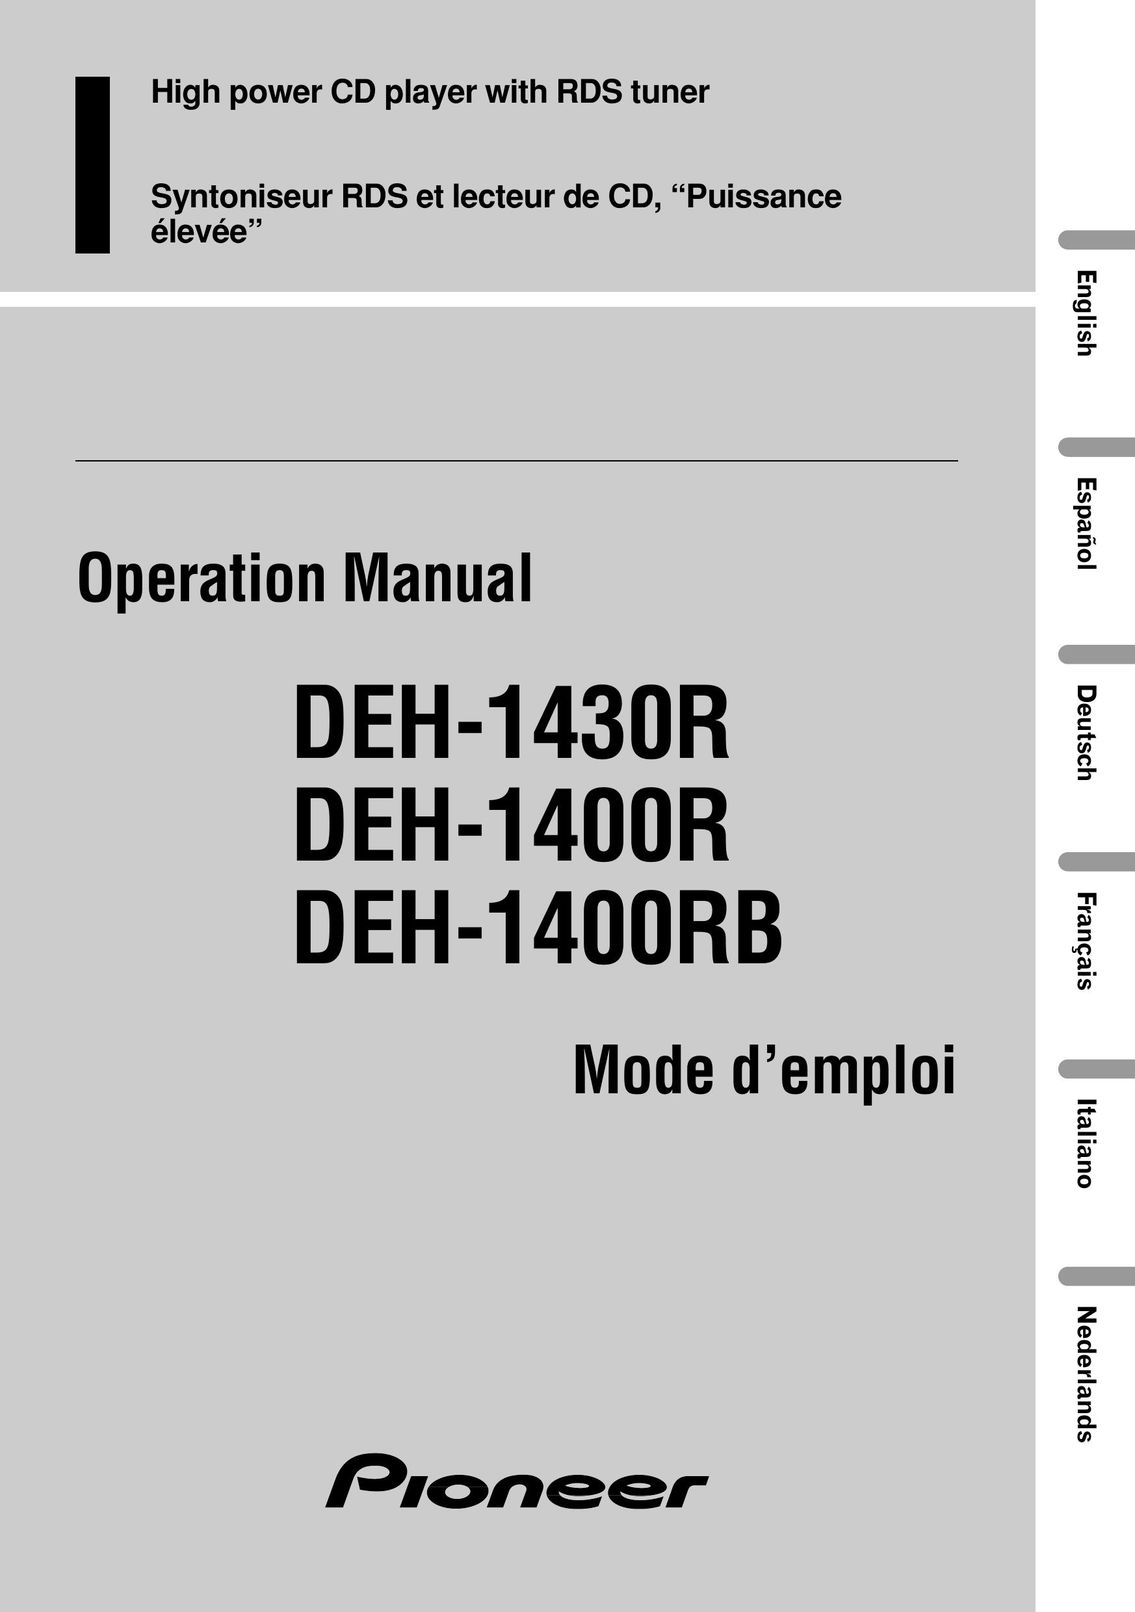 Pioneer DEH-1400R CD Player User Manual